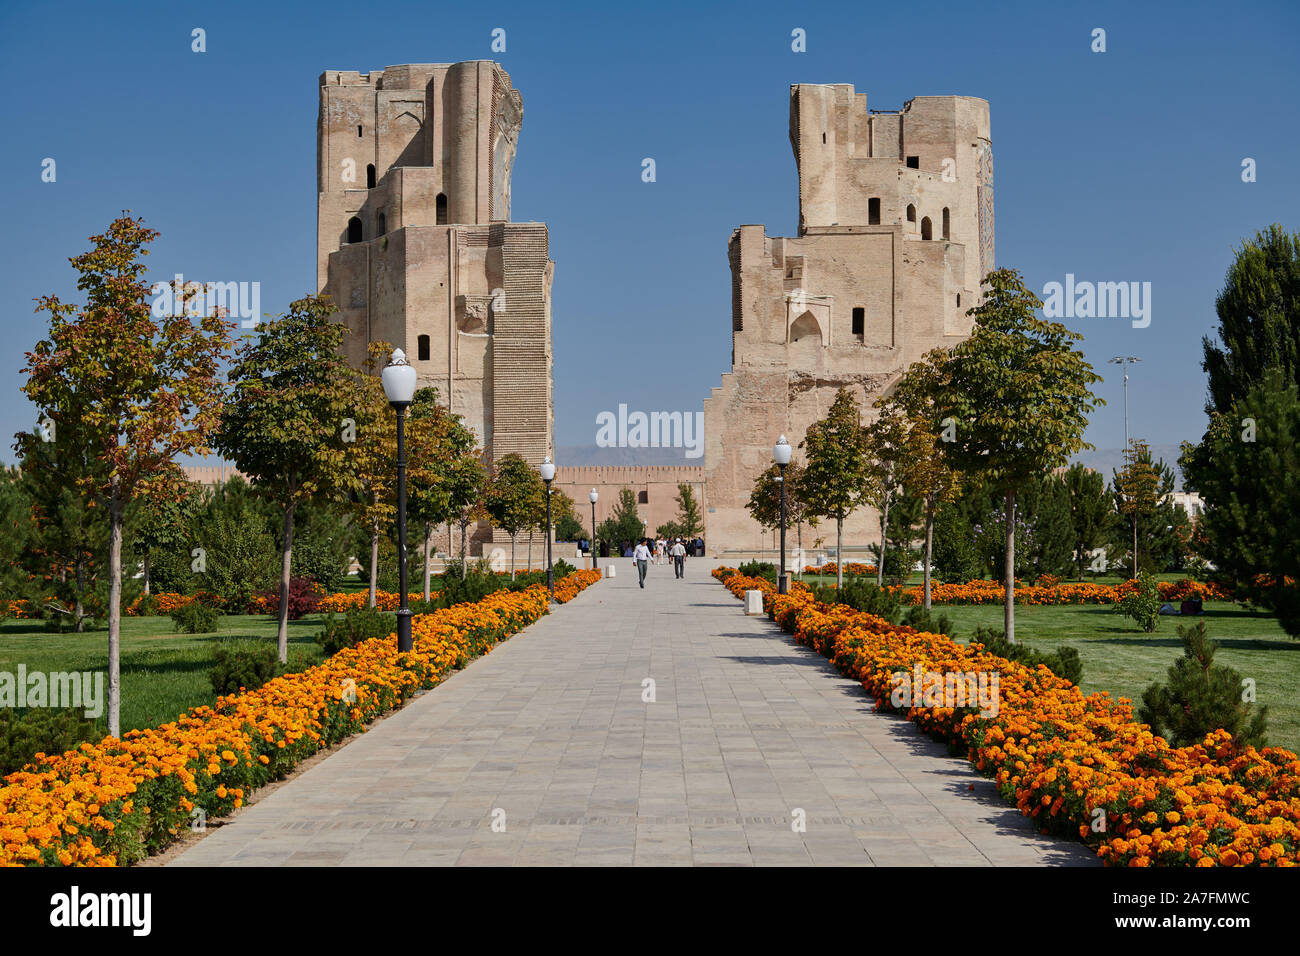 Rovine del cancello per ak Saray Palace, Shahrisabz, Uzbekistan in Asia centrale Foto Stock